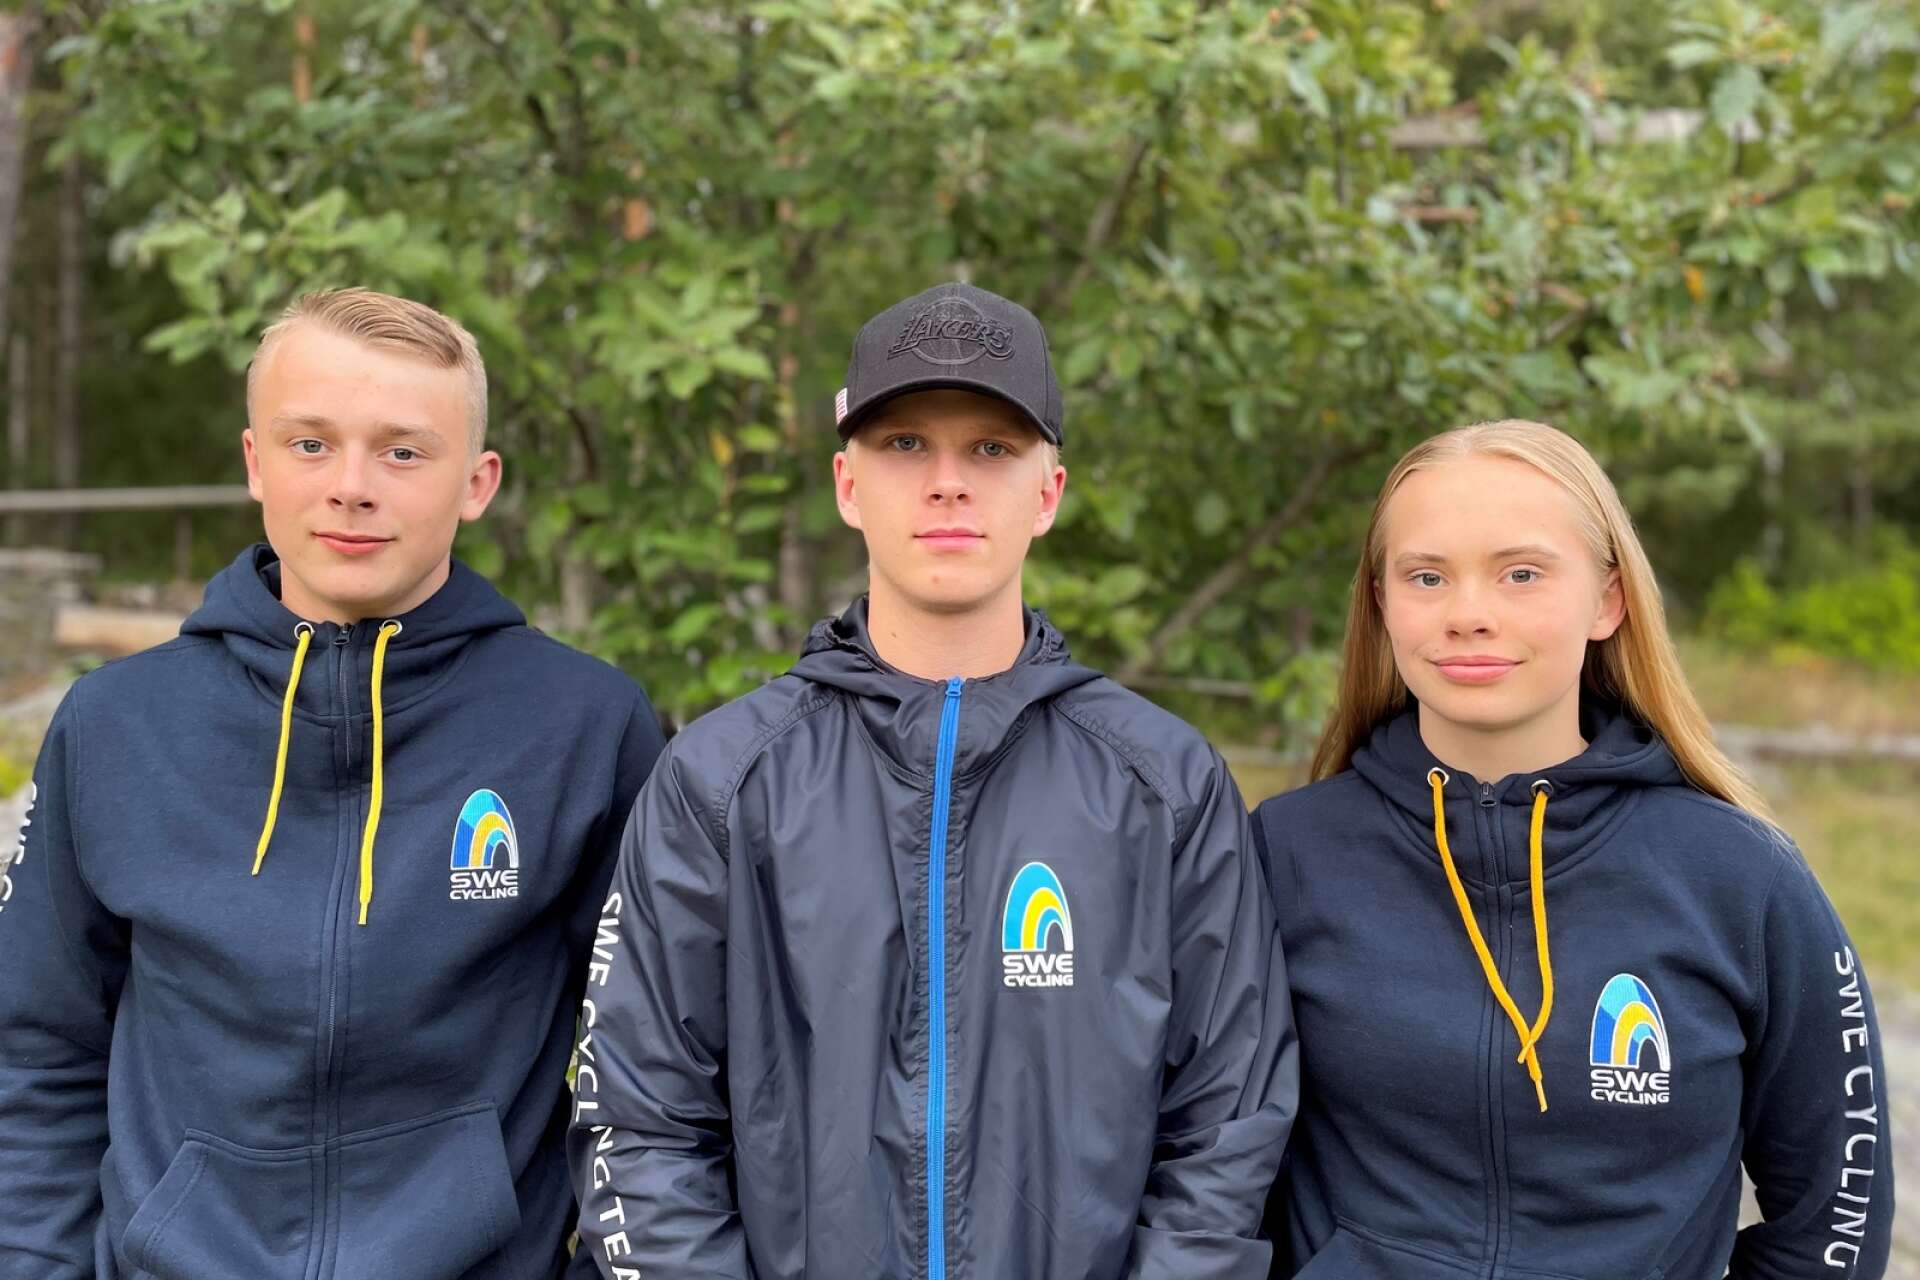 Arvikacyklisterna Ludvig Andersson, Oskar Bäckman och Hilda Andersson är laddade inför trial-VM.